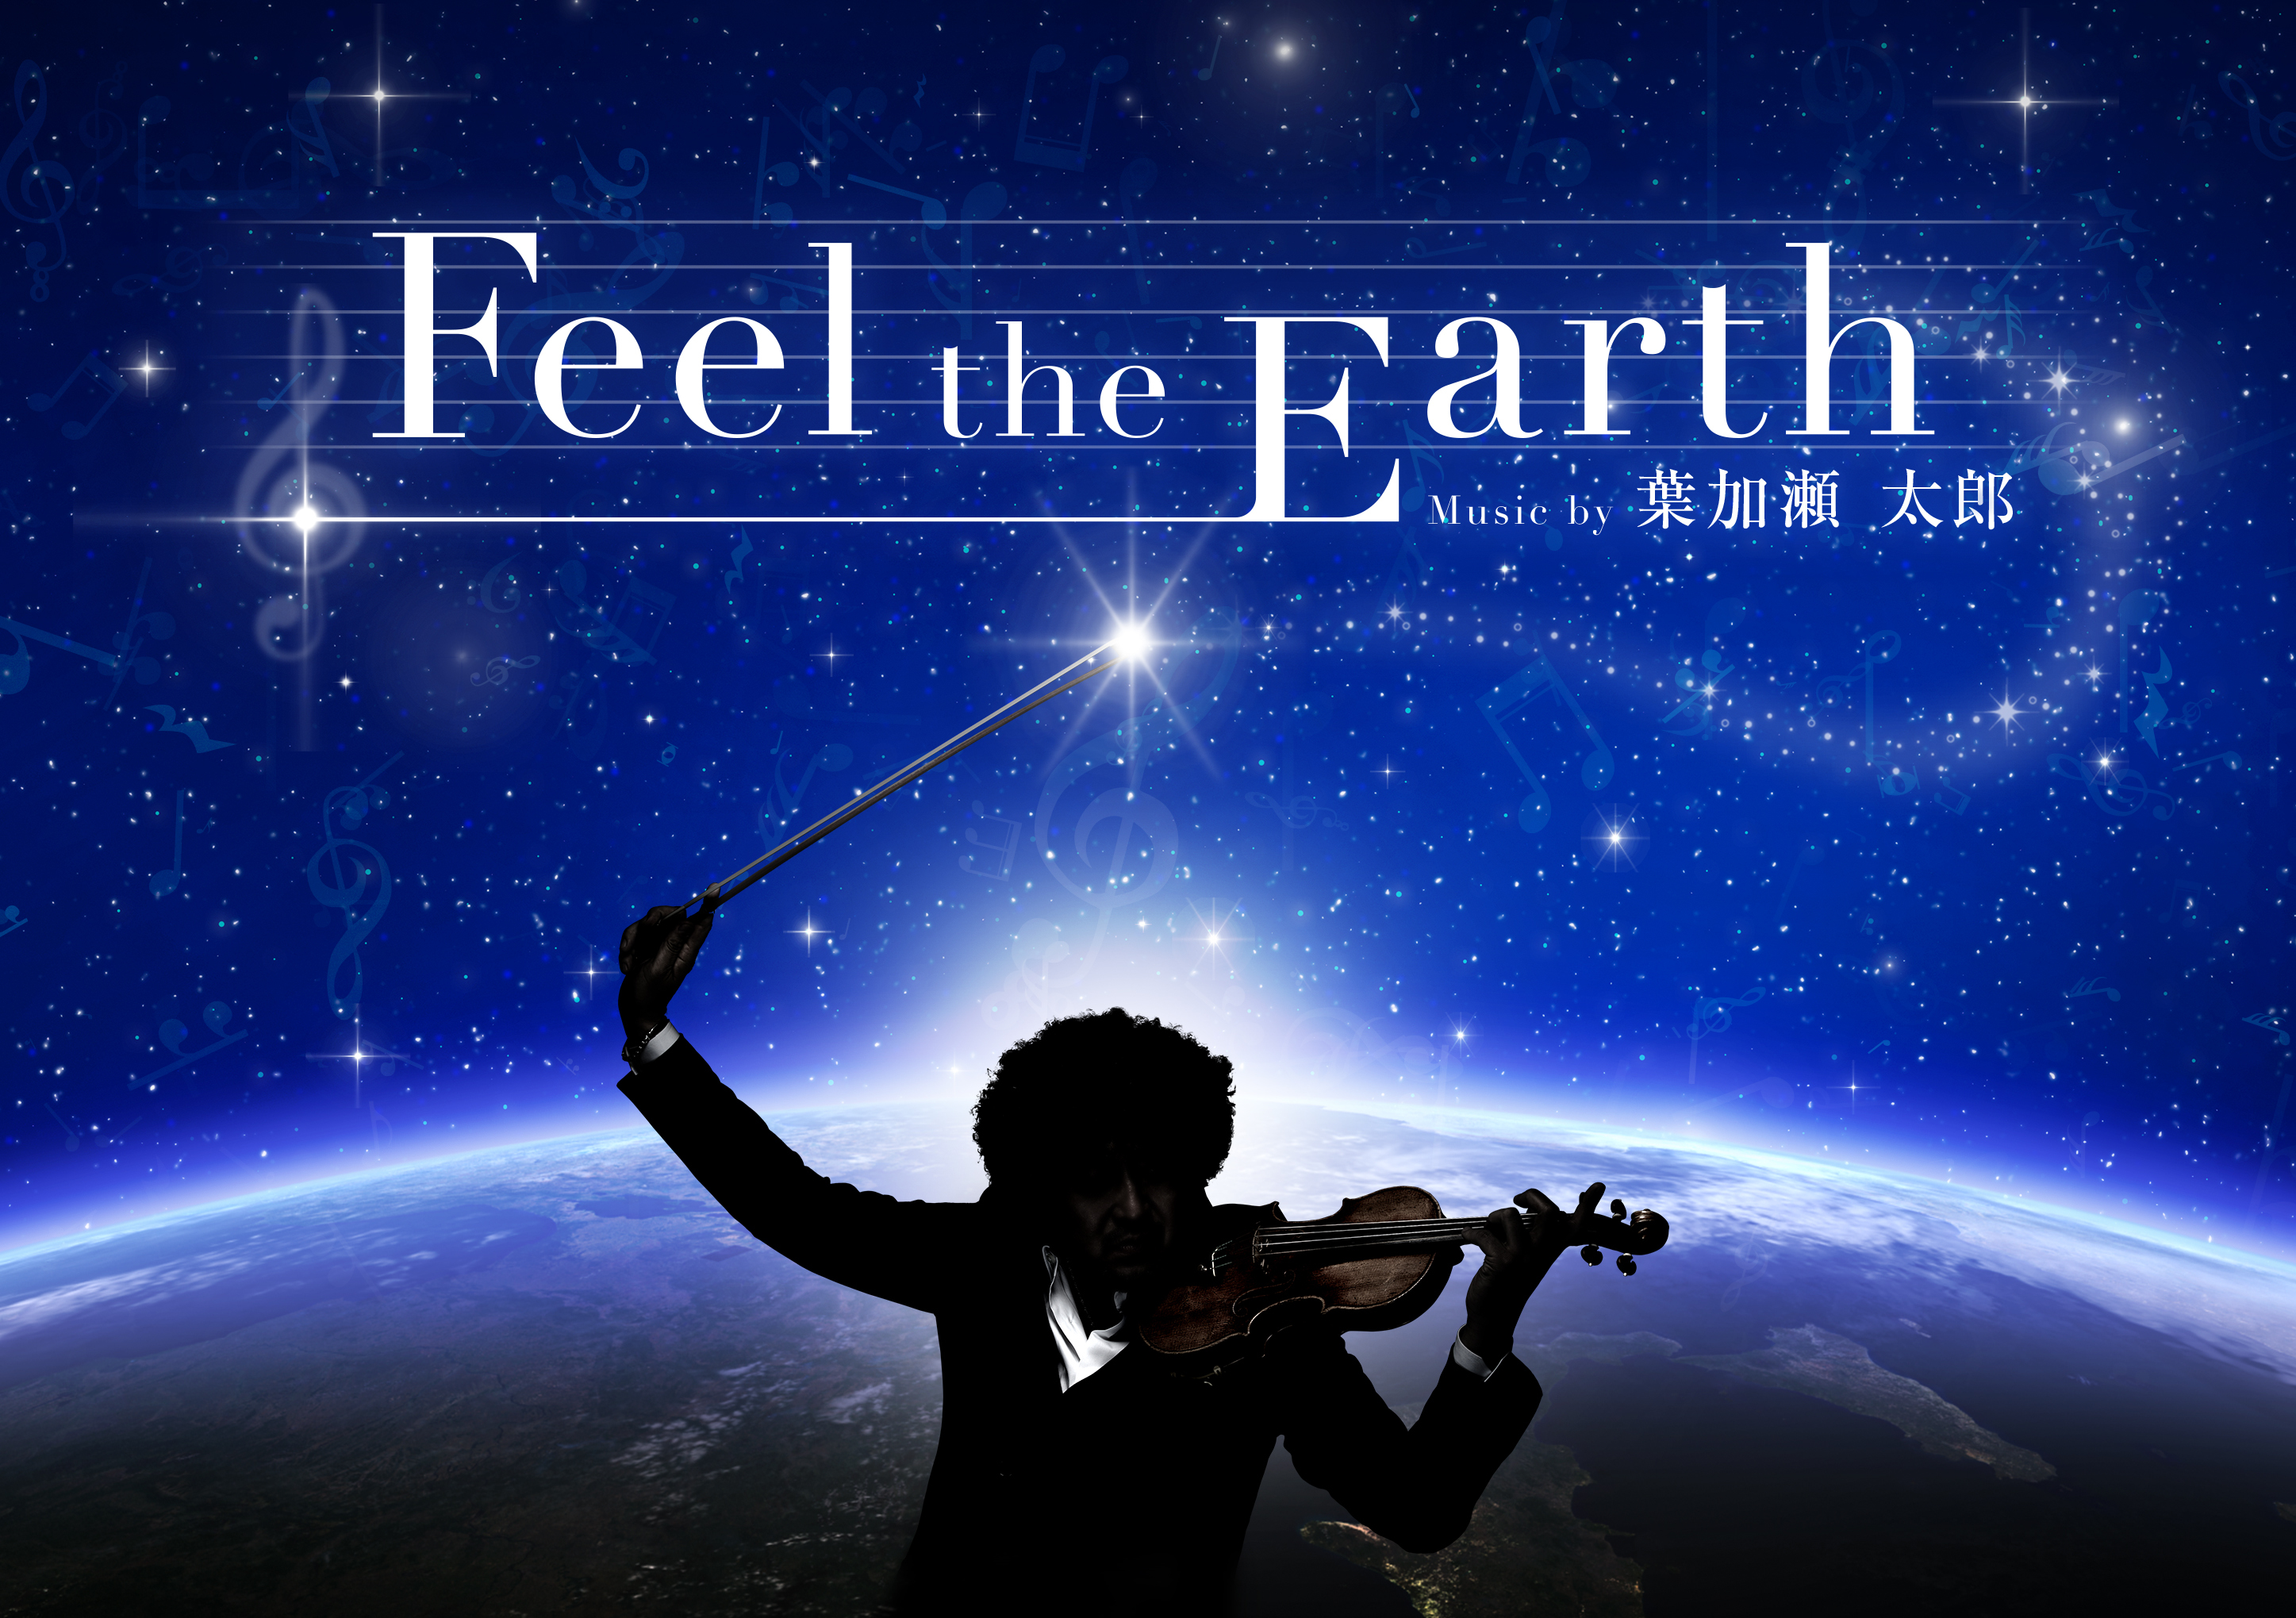 葉加瀬太郎 アロマ 星空 究極のヒーリング作品 Feel The Earth Music By 葉加瀬太郎 Every Life